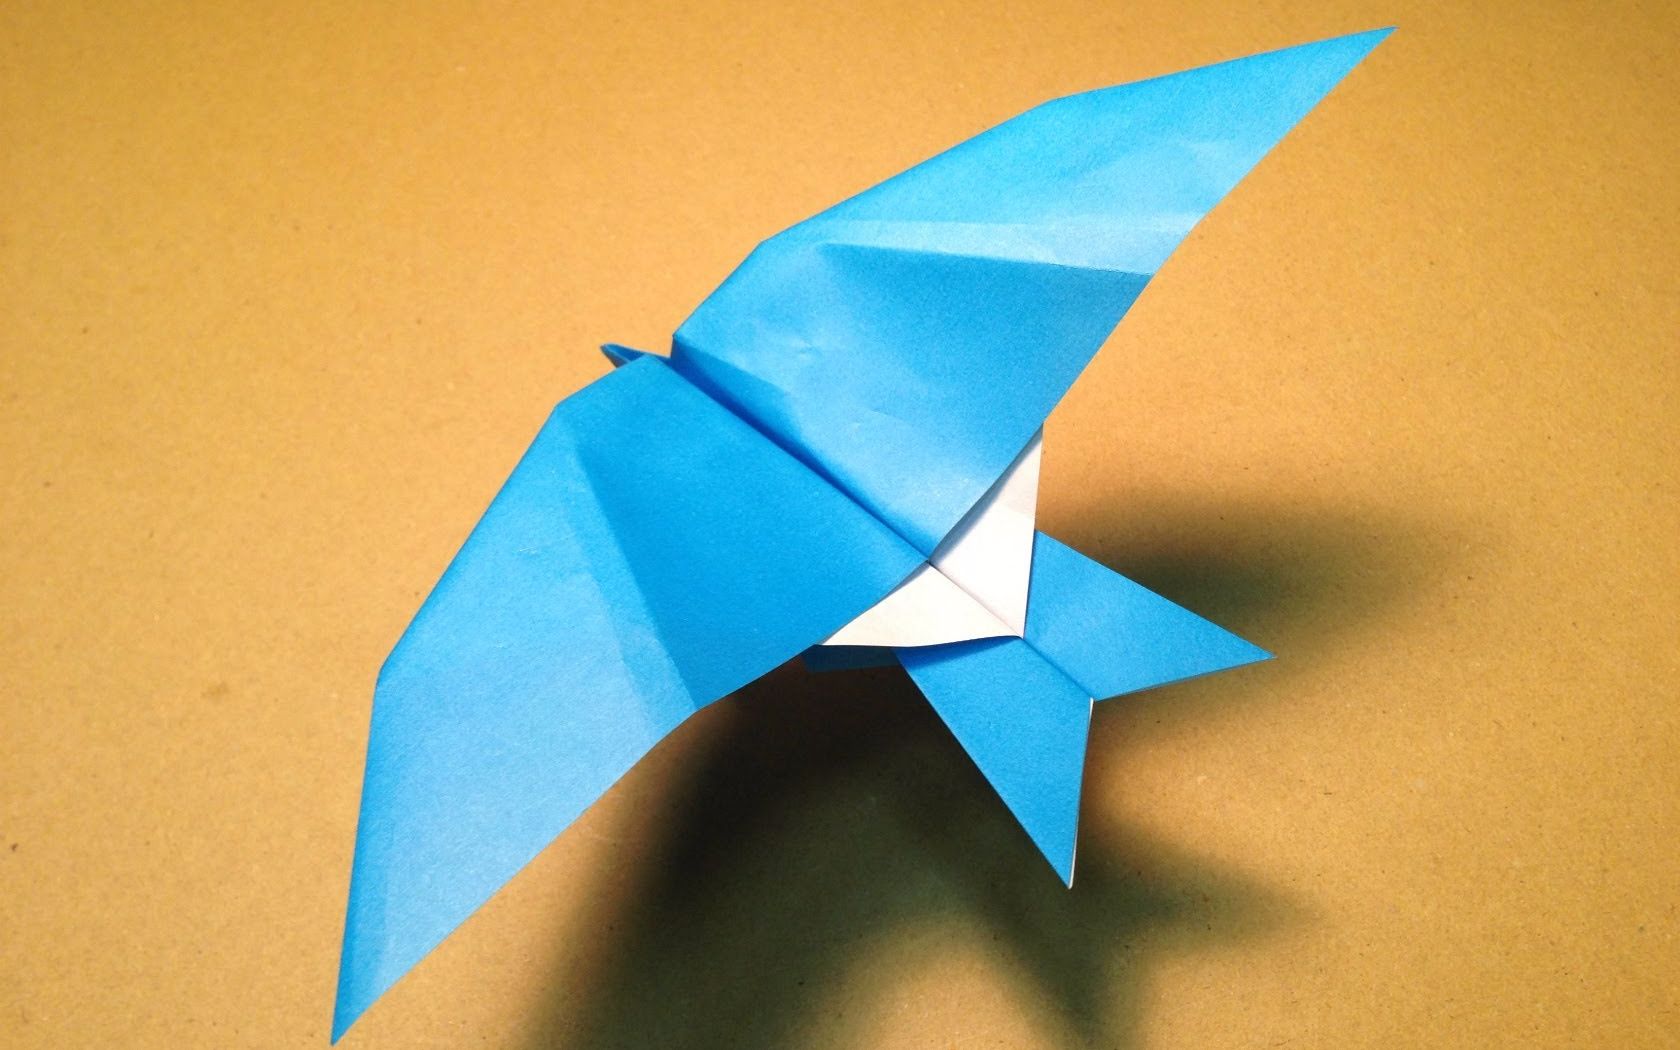 几乎没人会折的燕式纸飞机,掌握好技巧能飞非常远